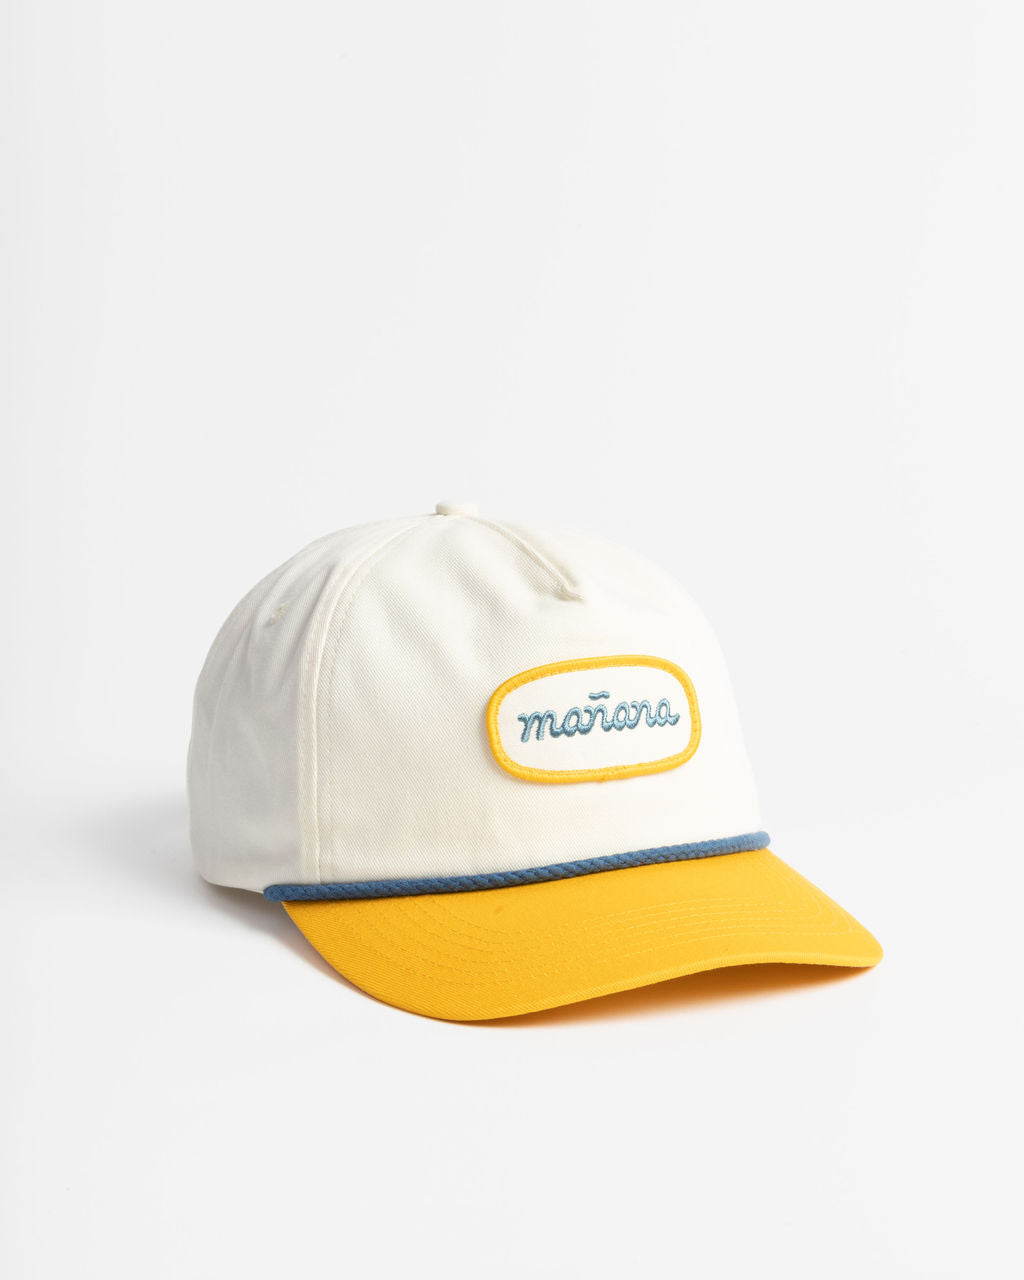 Yellow Two-Tone Cap having Manana branding